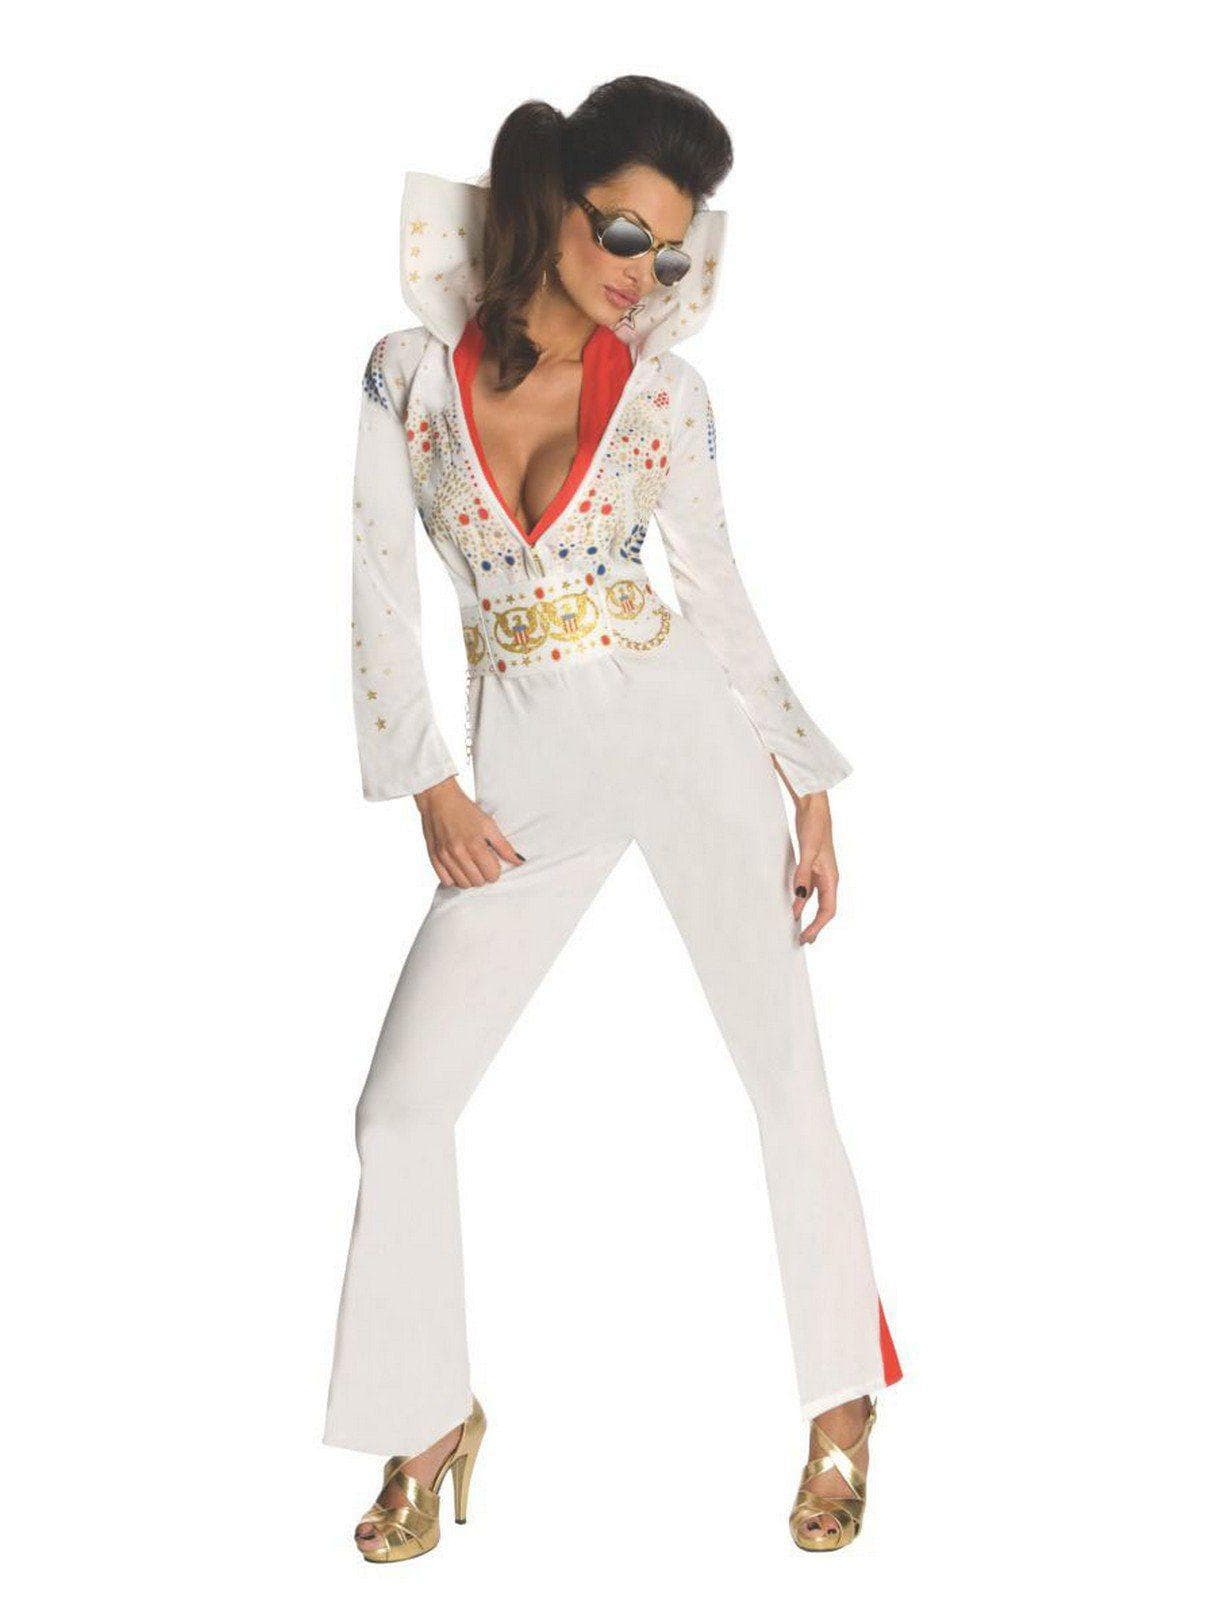 Women's Elvis Costume - costumes.com